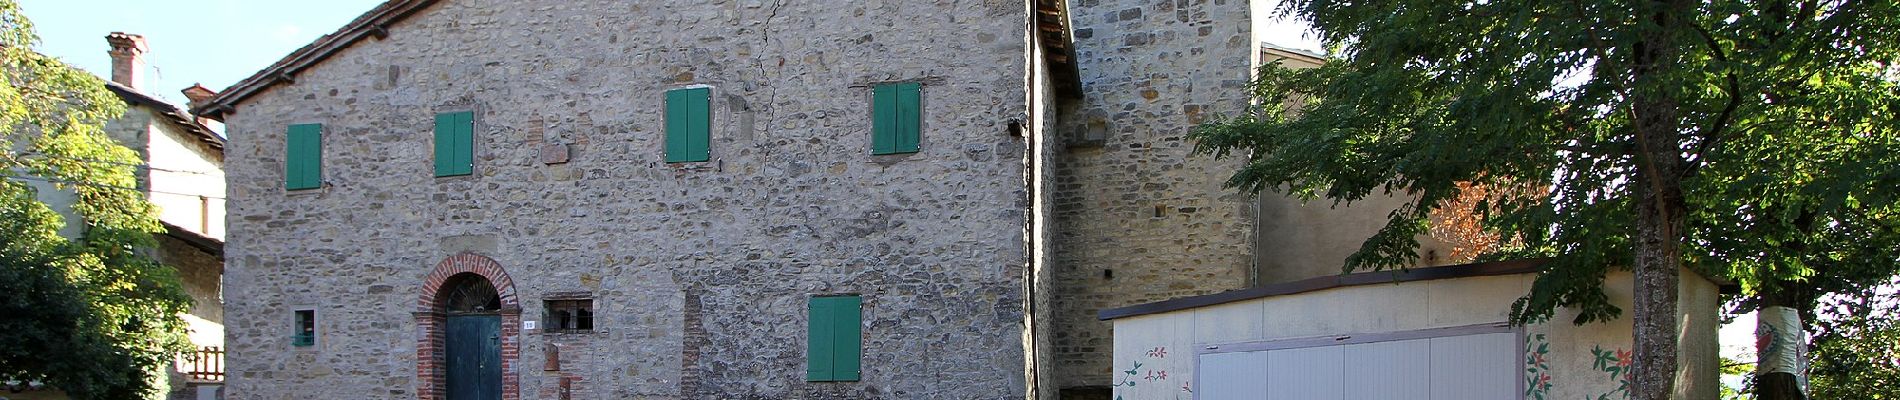 Percorso A piedi Castel d'Aiano - IT-150 - Photo